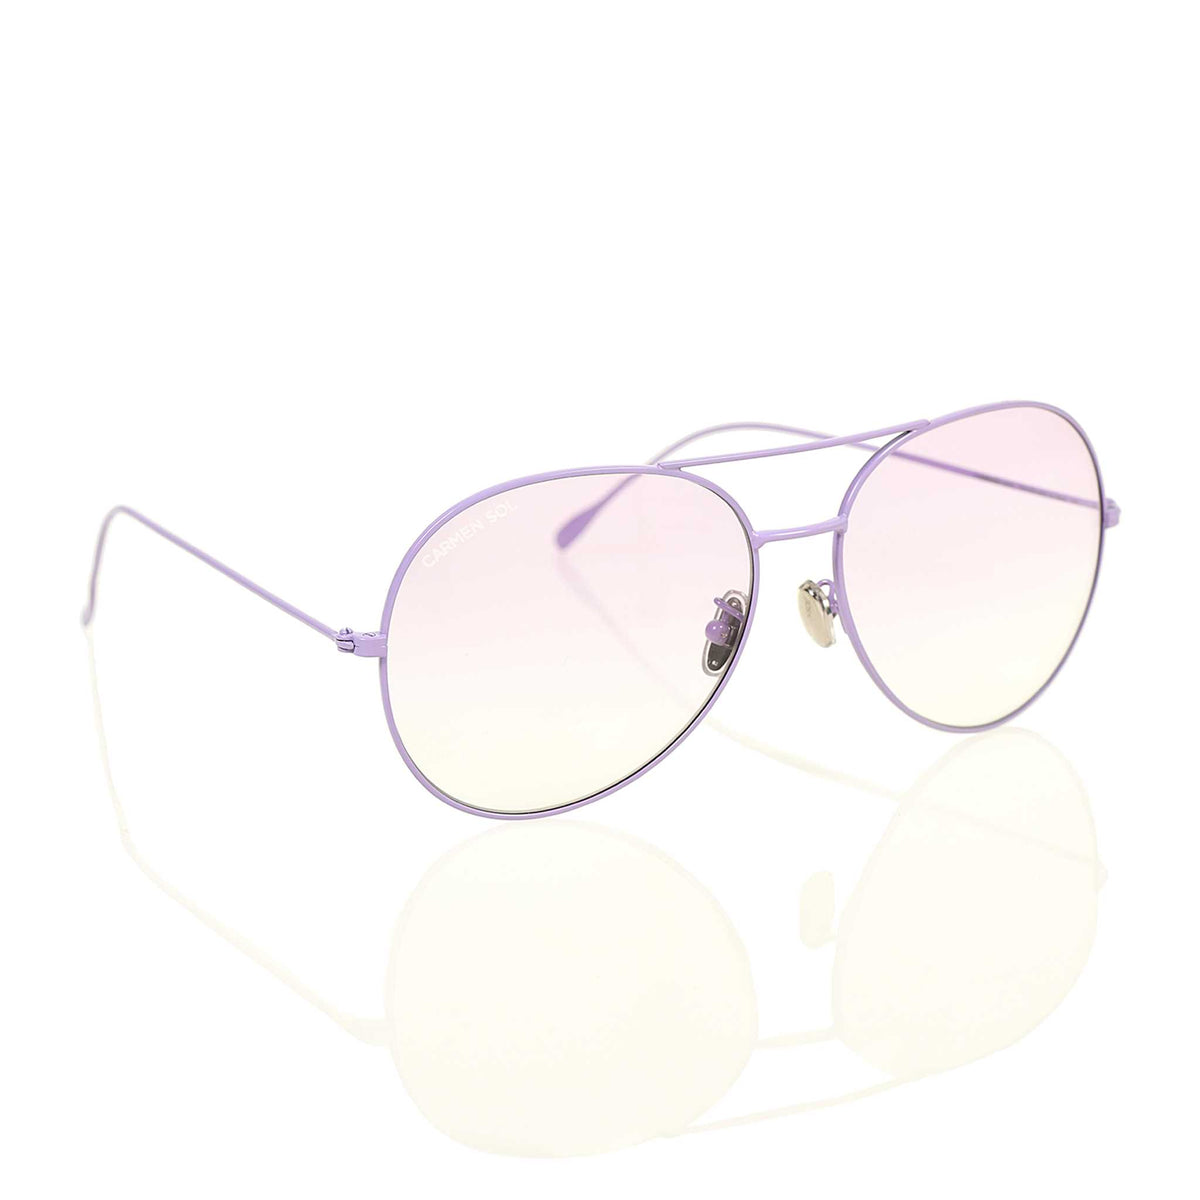 Violet sunglasses for women